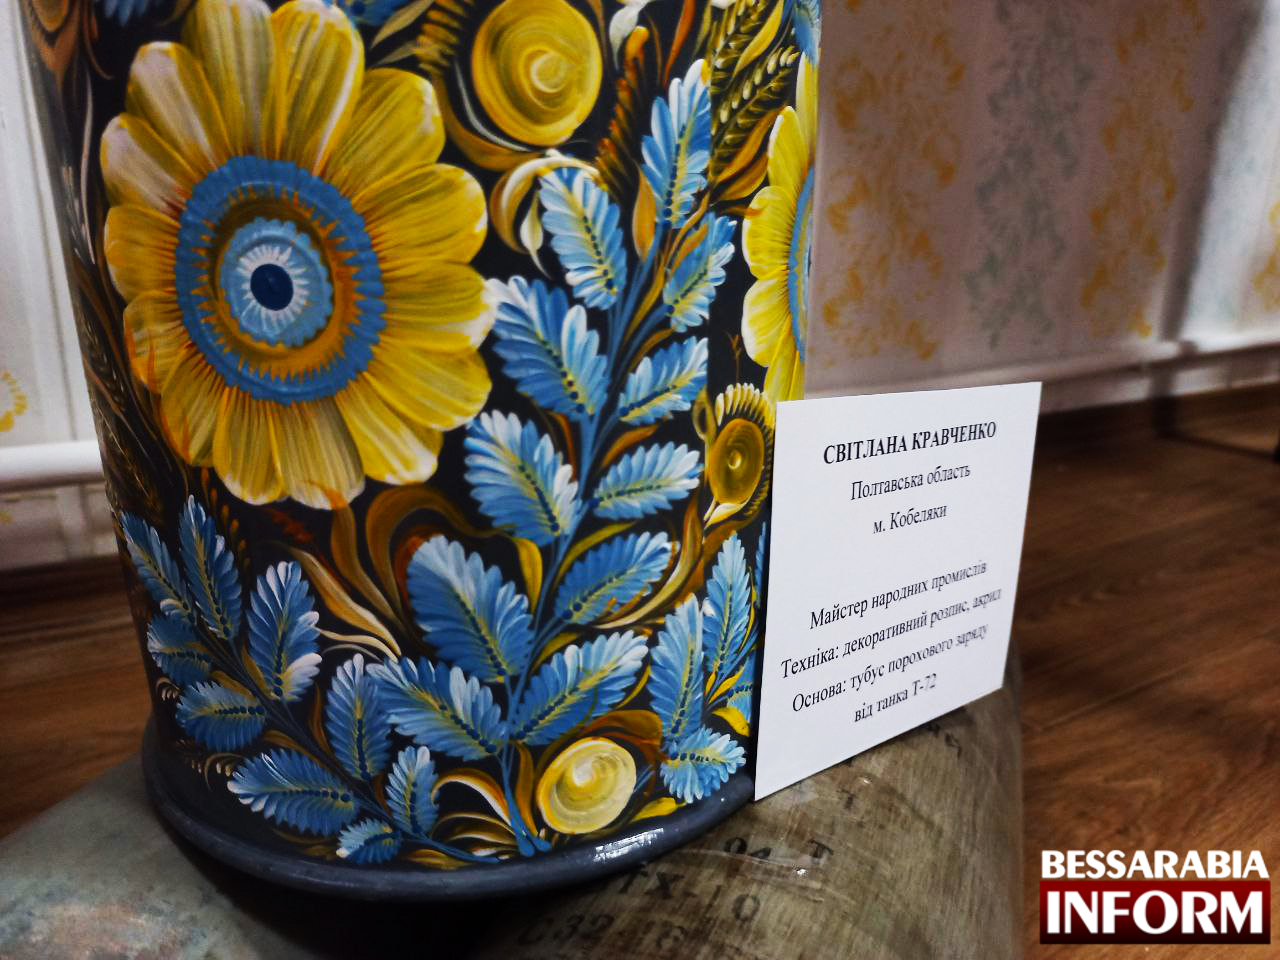 В Измаиле открылась крупнейшая в стране музейная коллекция проекта "Украинское арторужие"